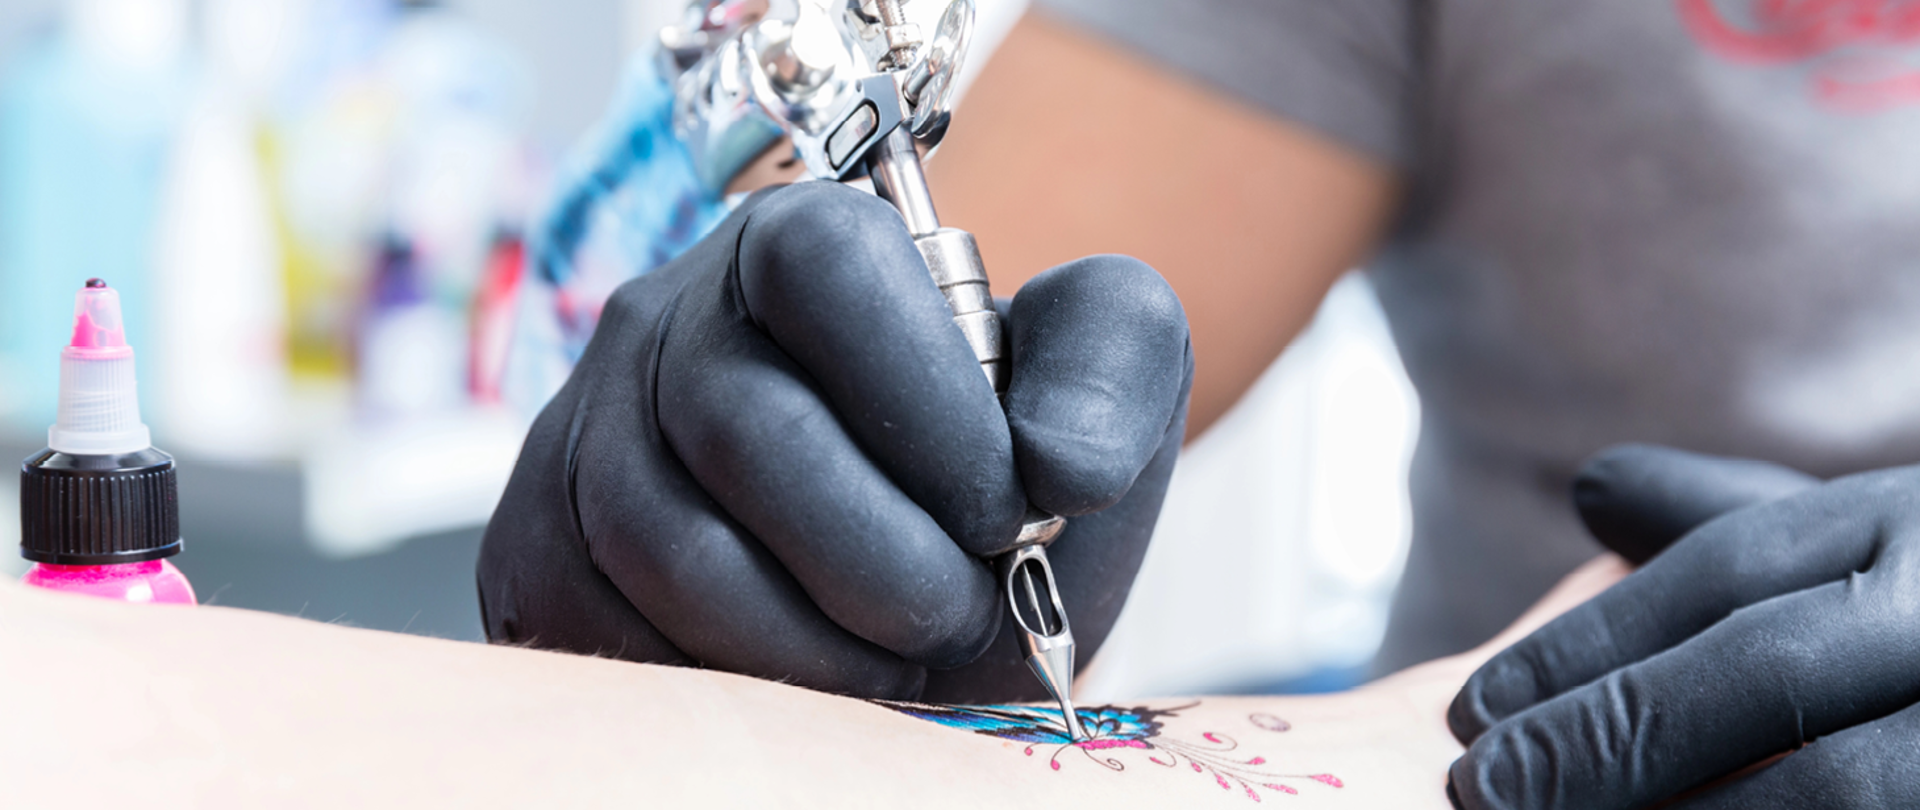 ręka osoby, która poddaje się zabiegowi tatuowania kolorowego motywu. Osoba wykonującą tatuaż ma założone czarne rękawiczki a w reku trzyma pistolet do tatuażu. 